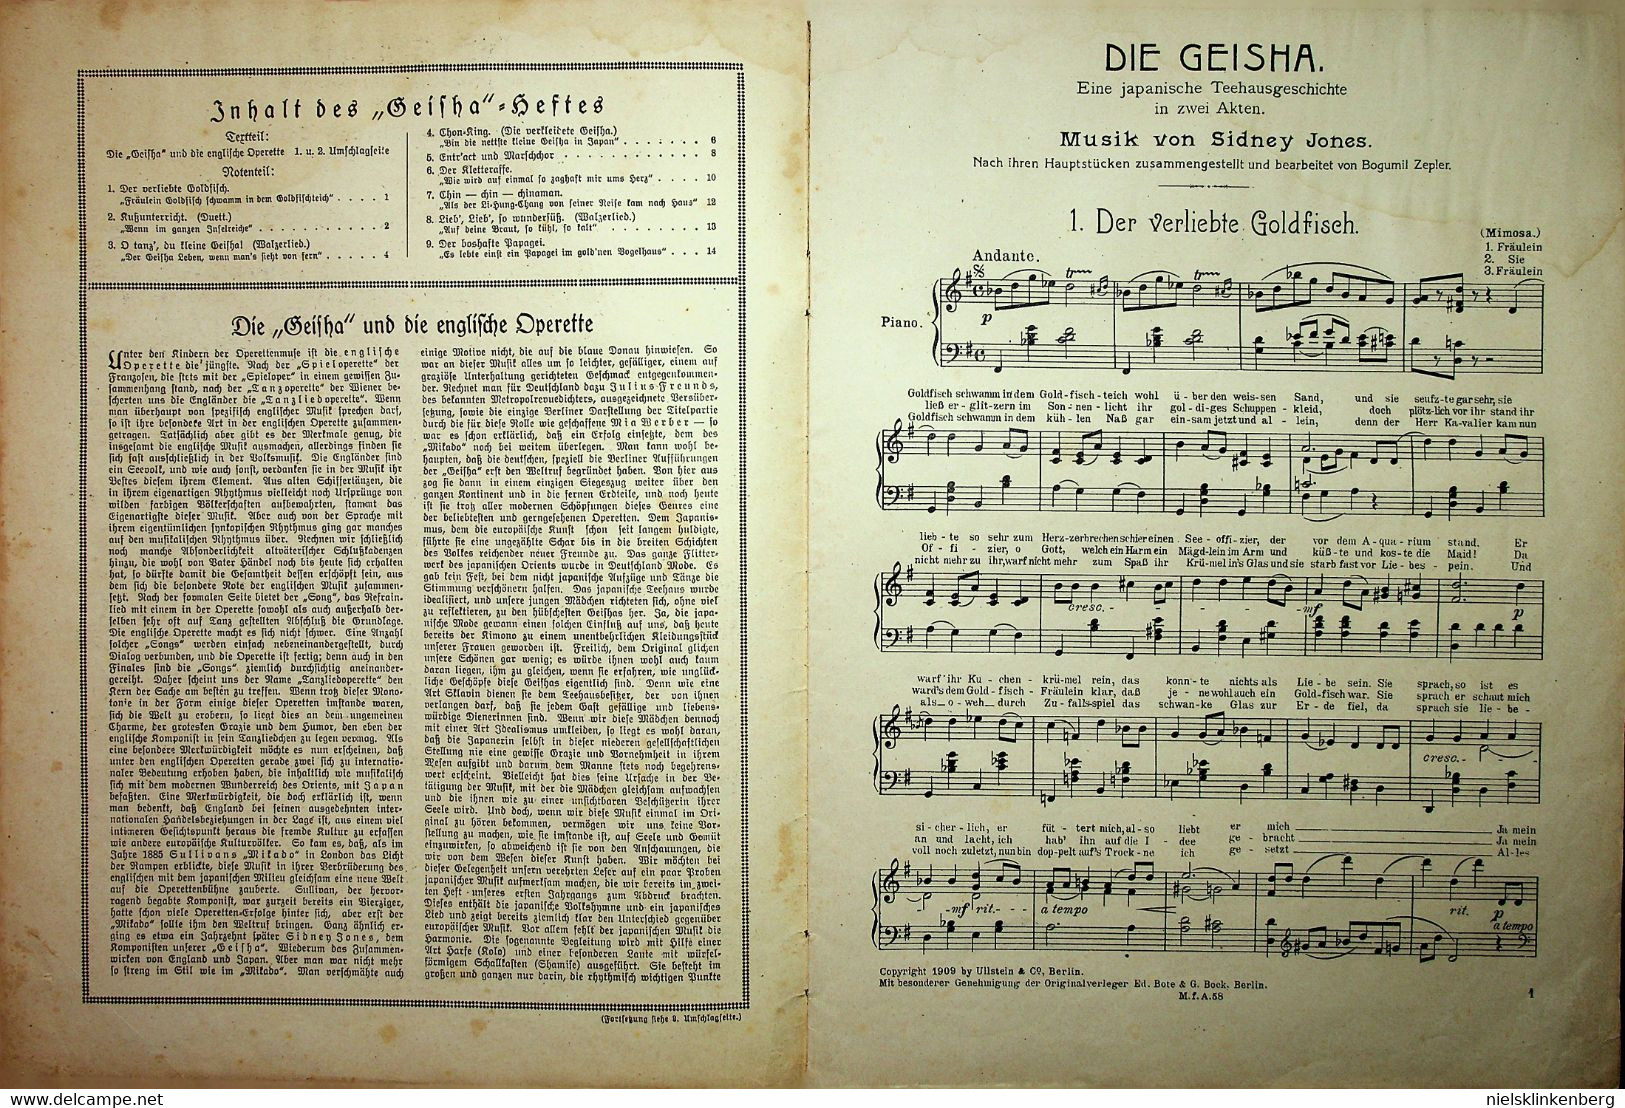 leuke collectie liederen en bladmuziek uit het begin van de 20e eeuw